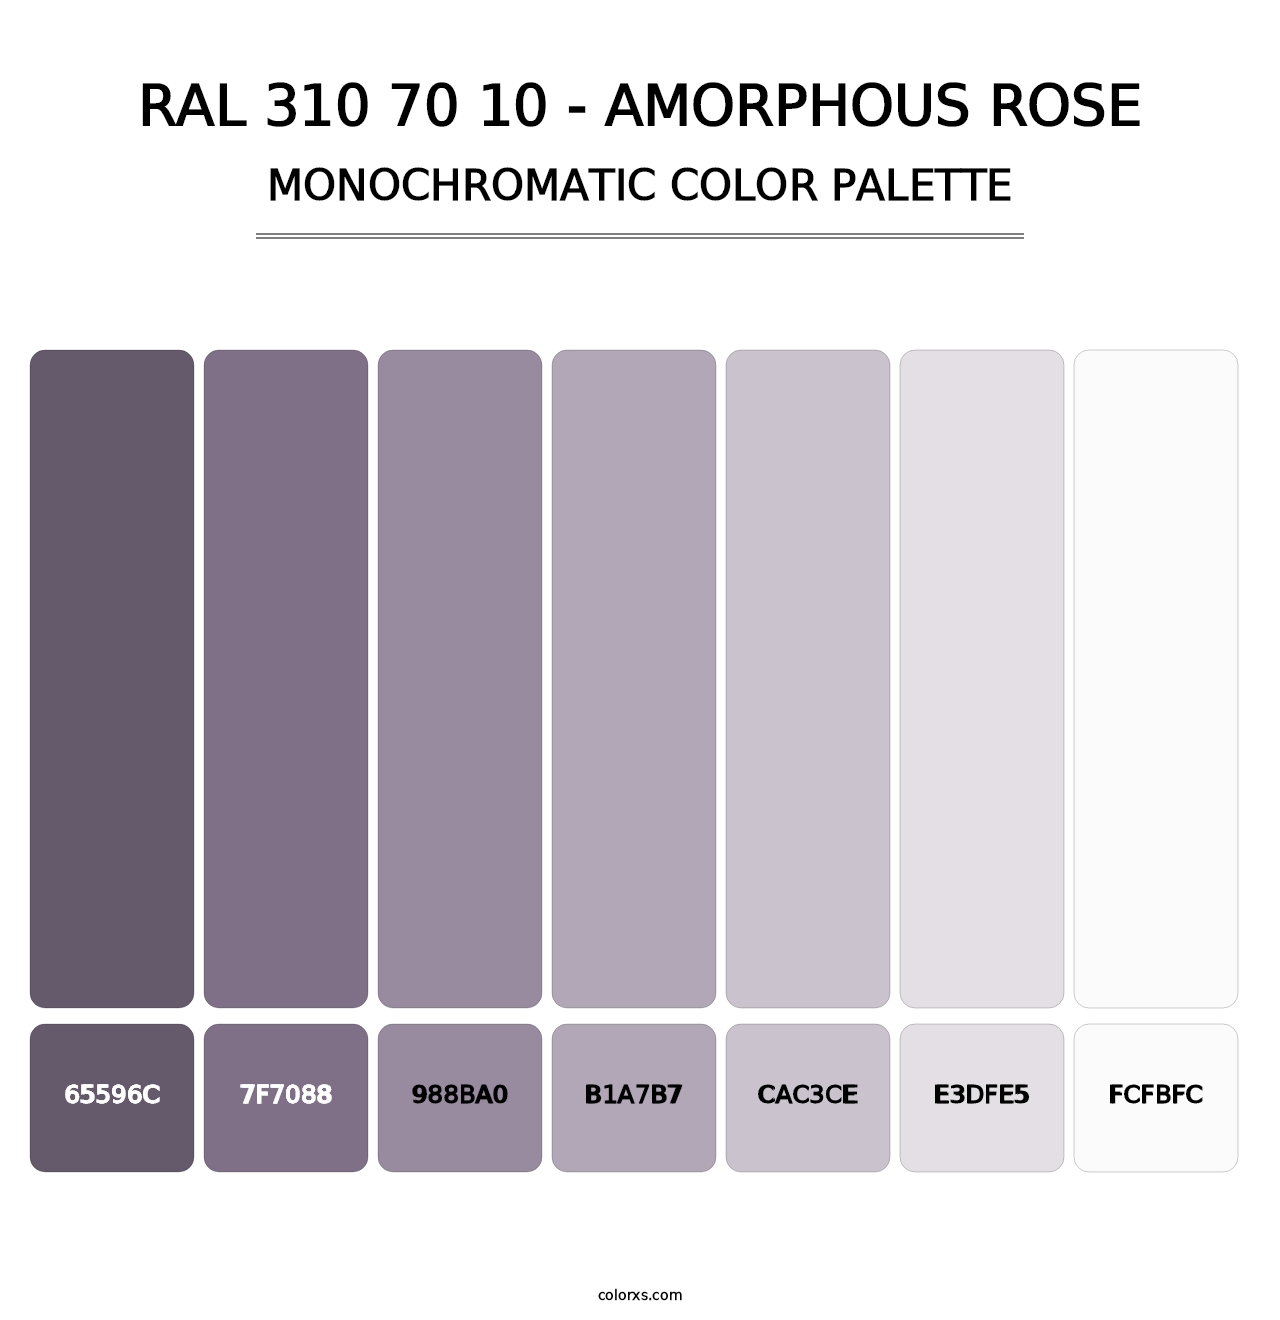 RAL 310 70 10 - Amorphous Rose - Monochromatic Color Palette